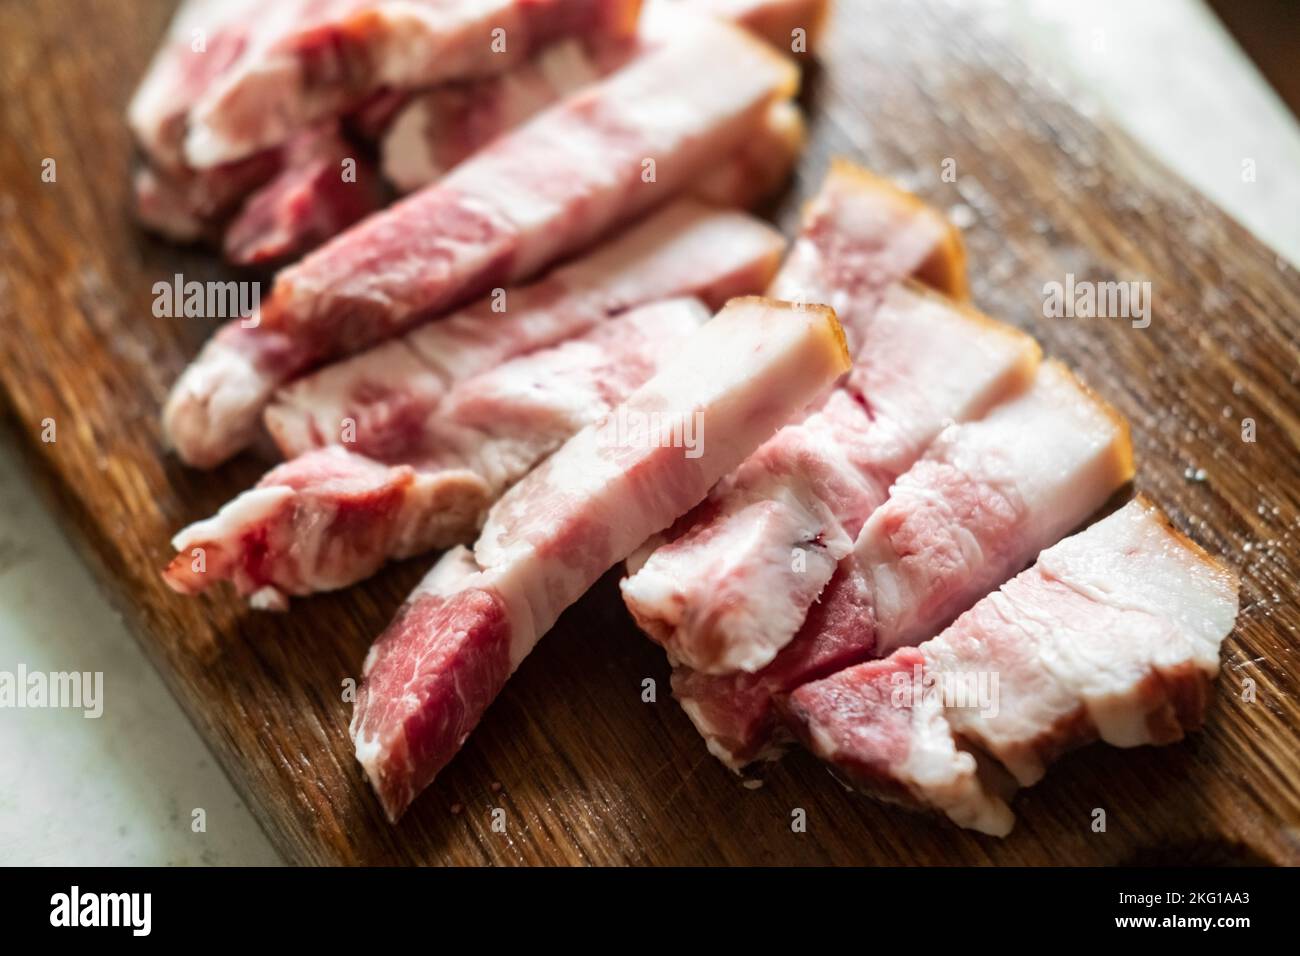 Tranches de bacon sur une planche de bois. Salo à la viande. Banque D'Images